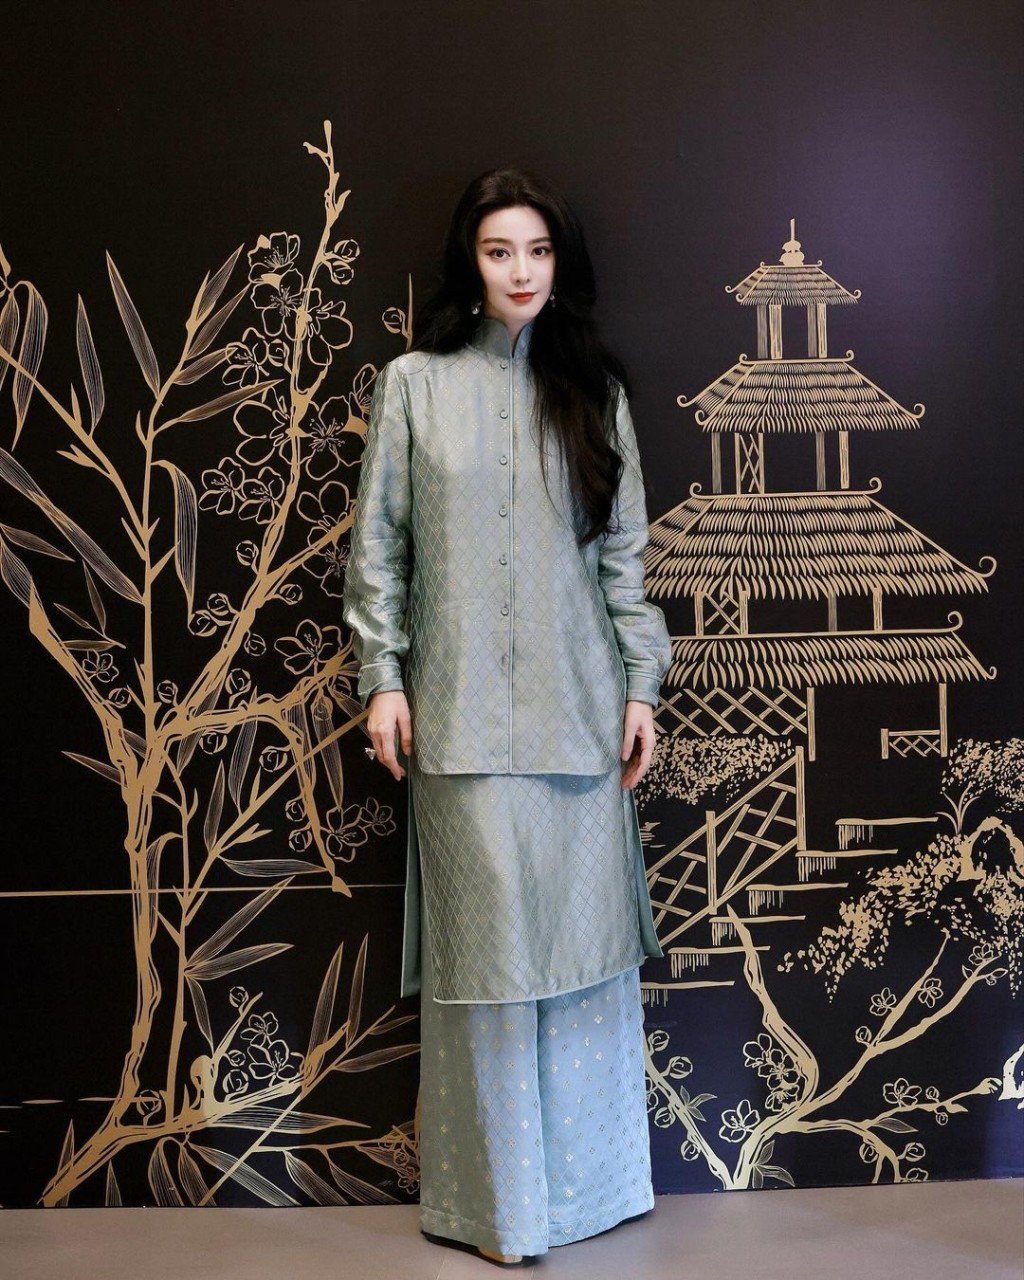 至于第三套由中国设计师品牌M ESSENTIAL最新系列的沧浪缇花新中式套装终于获得网民大赞。